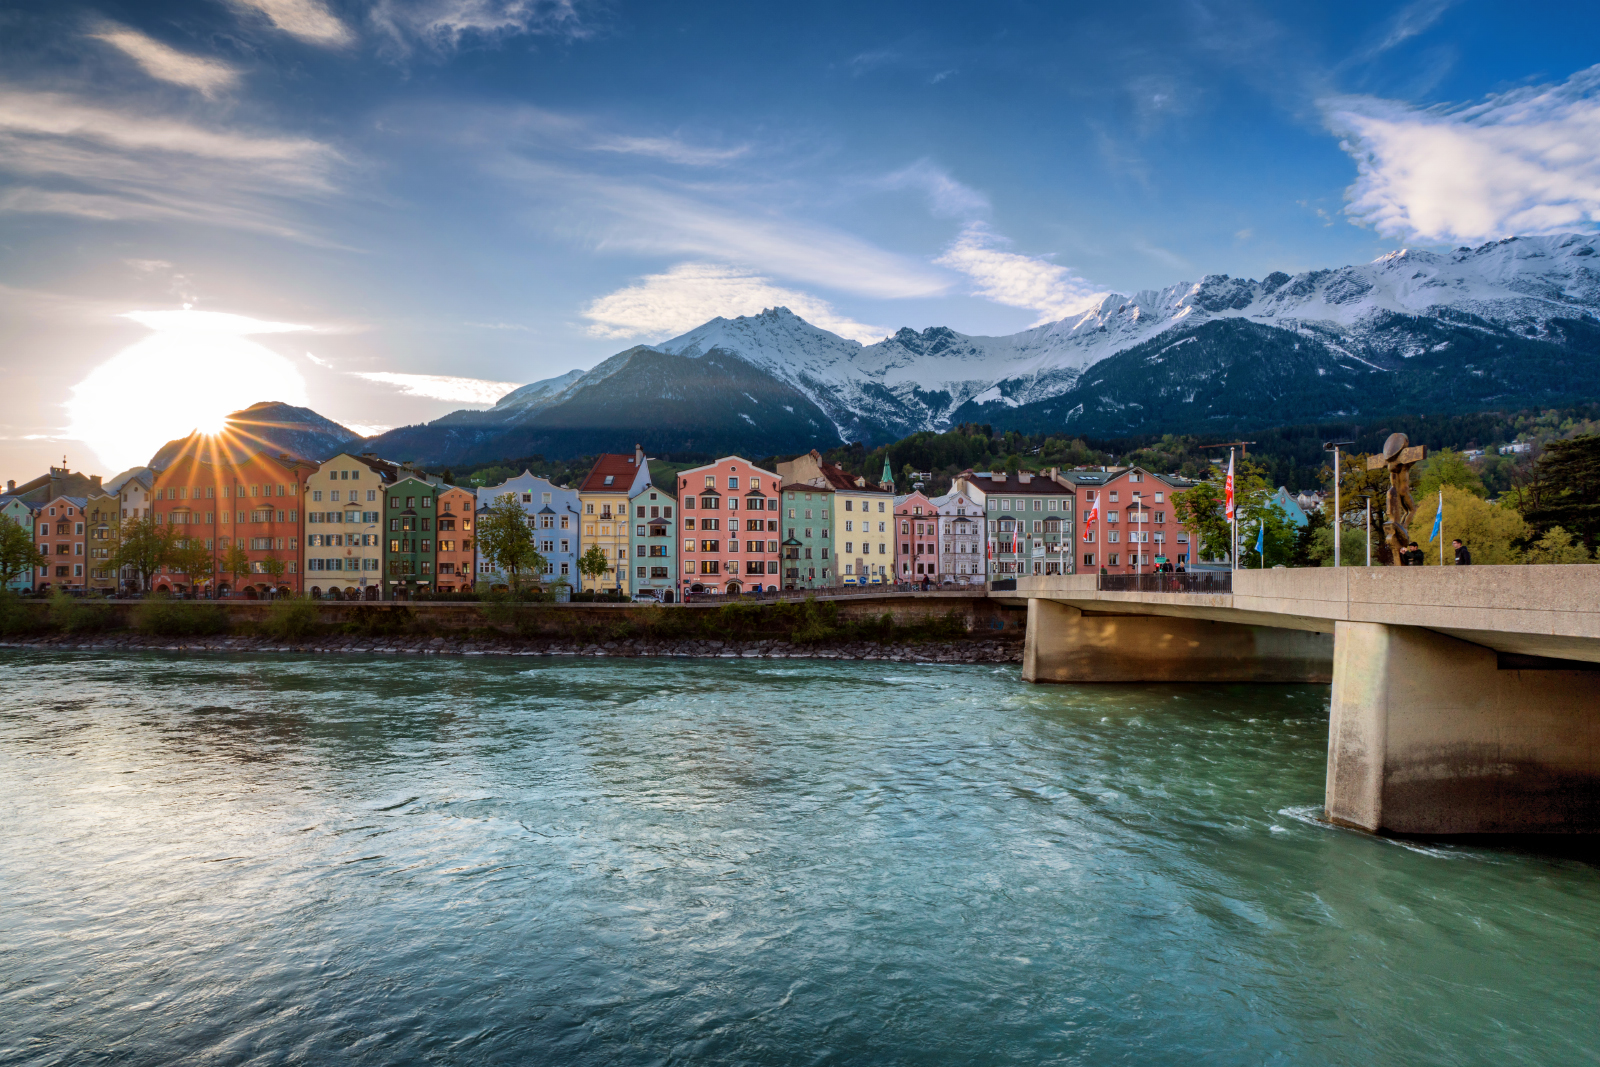 Ein Bild, ein Stadtteil - Innsbruck, Mariahilf